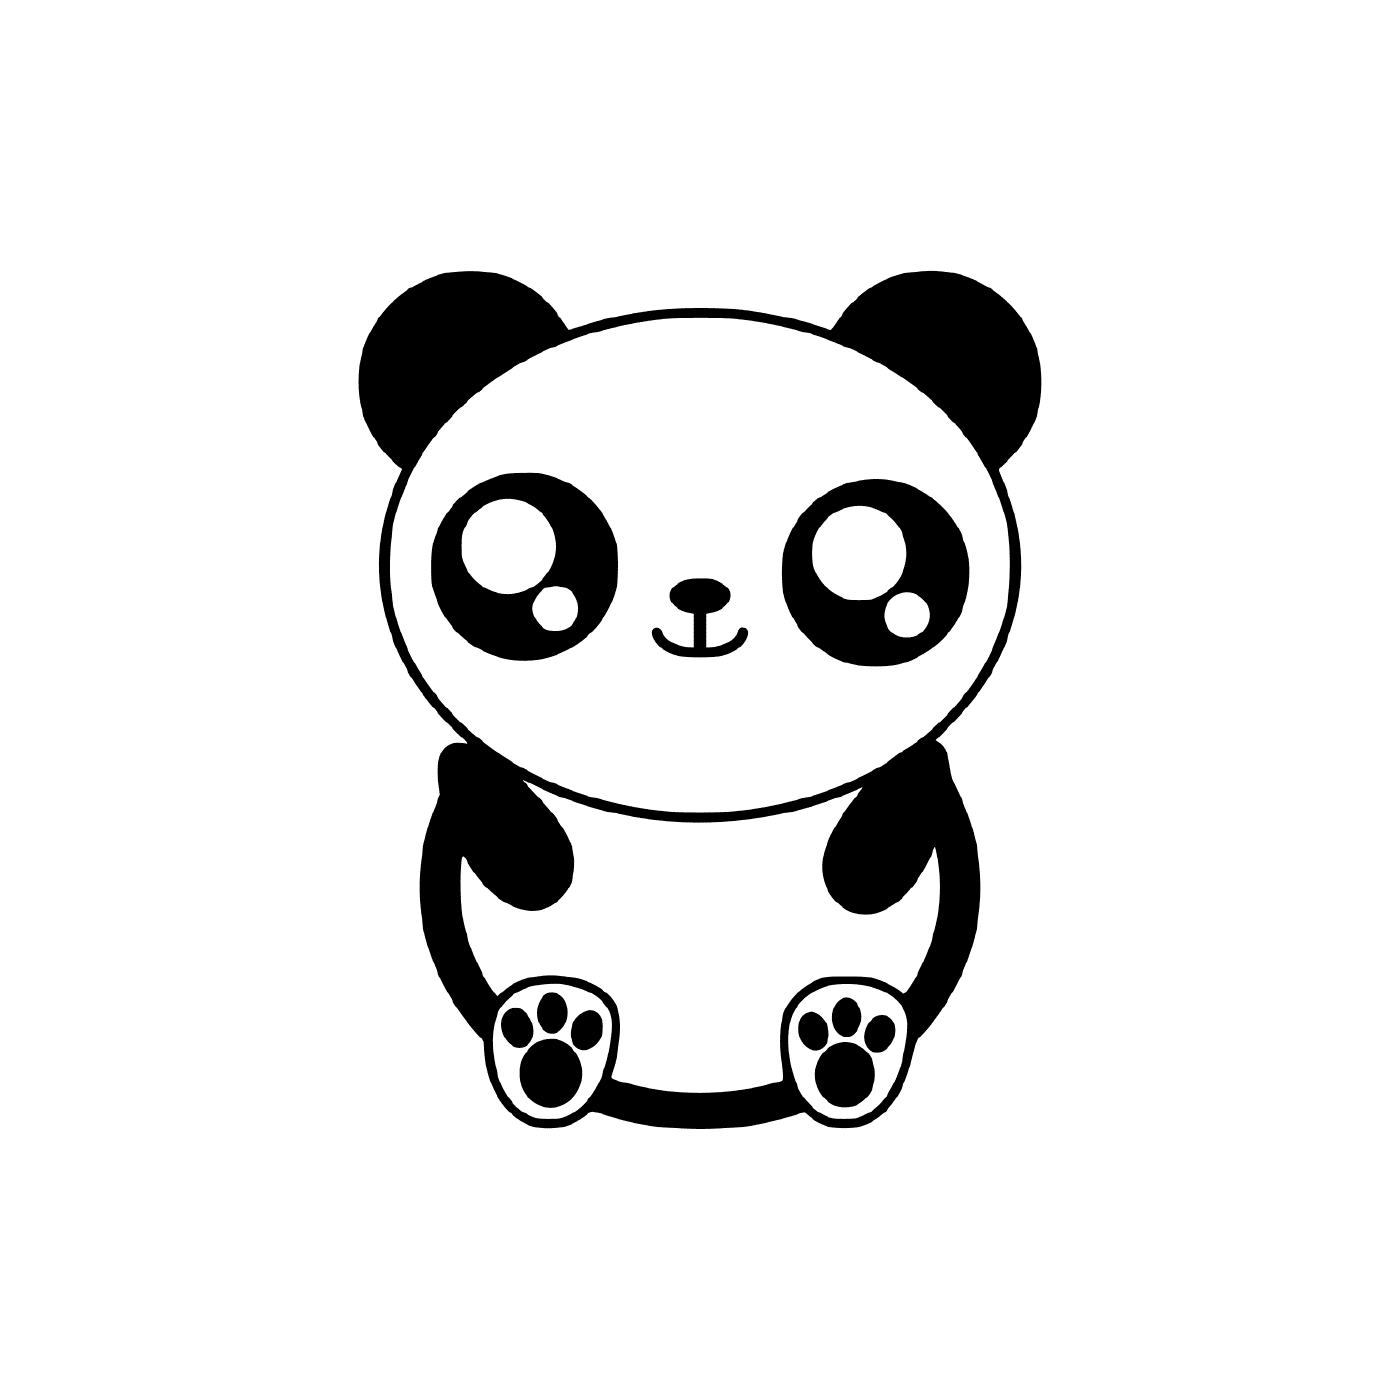  एक प्यारा पांडा 